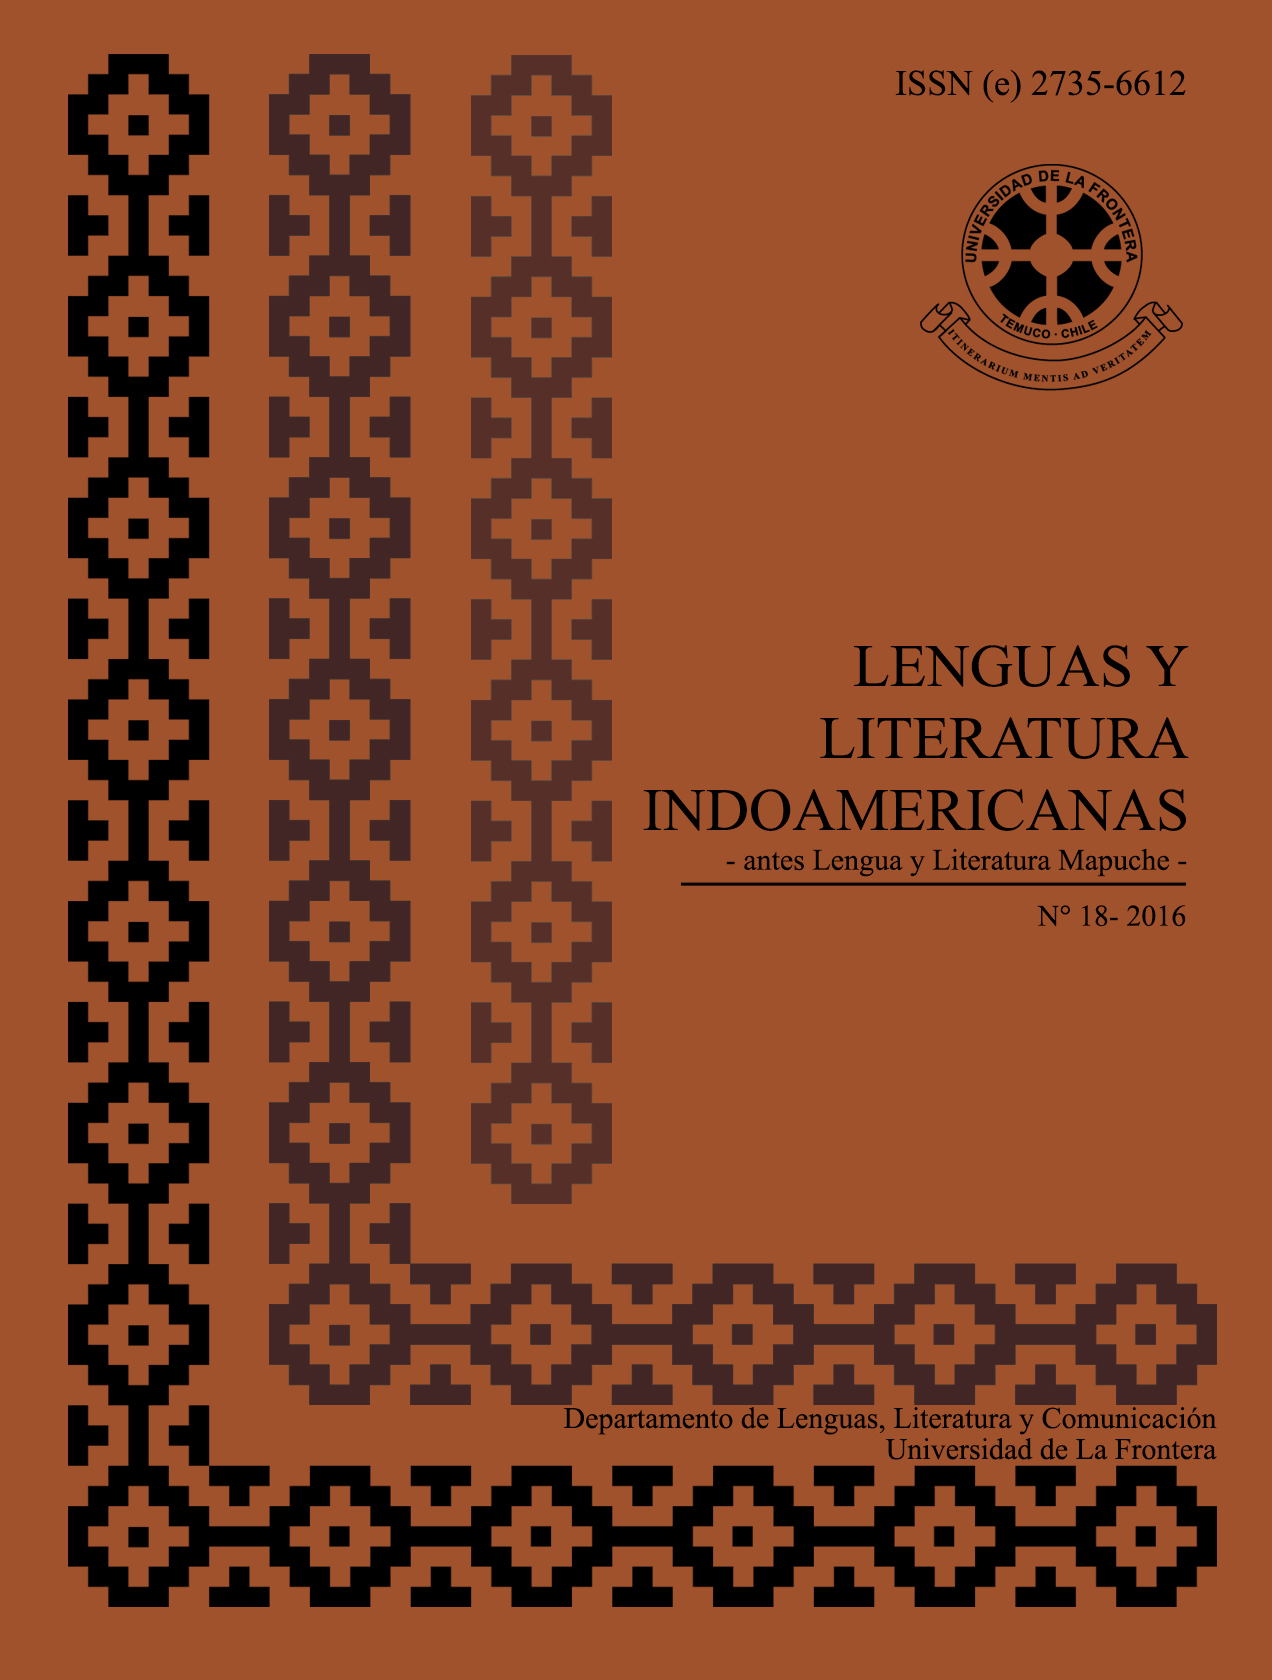 					Ver Vol. 18 Núm. 1 (2016): Revista de Lenguas y Literatura Indoamericanas (RLLI) 
				